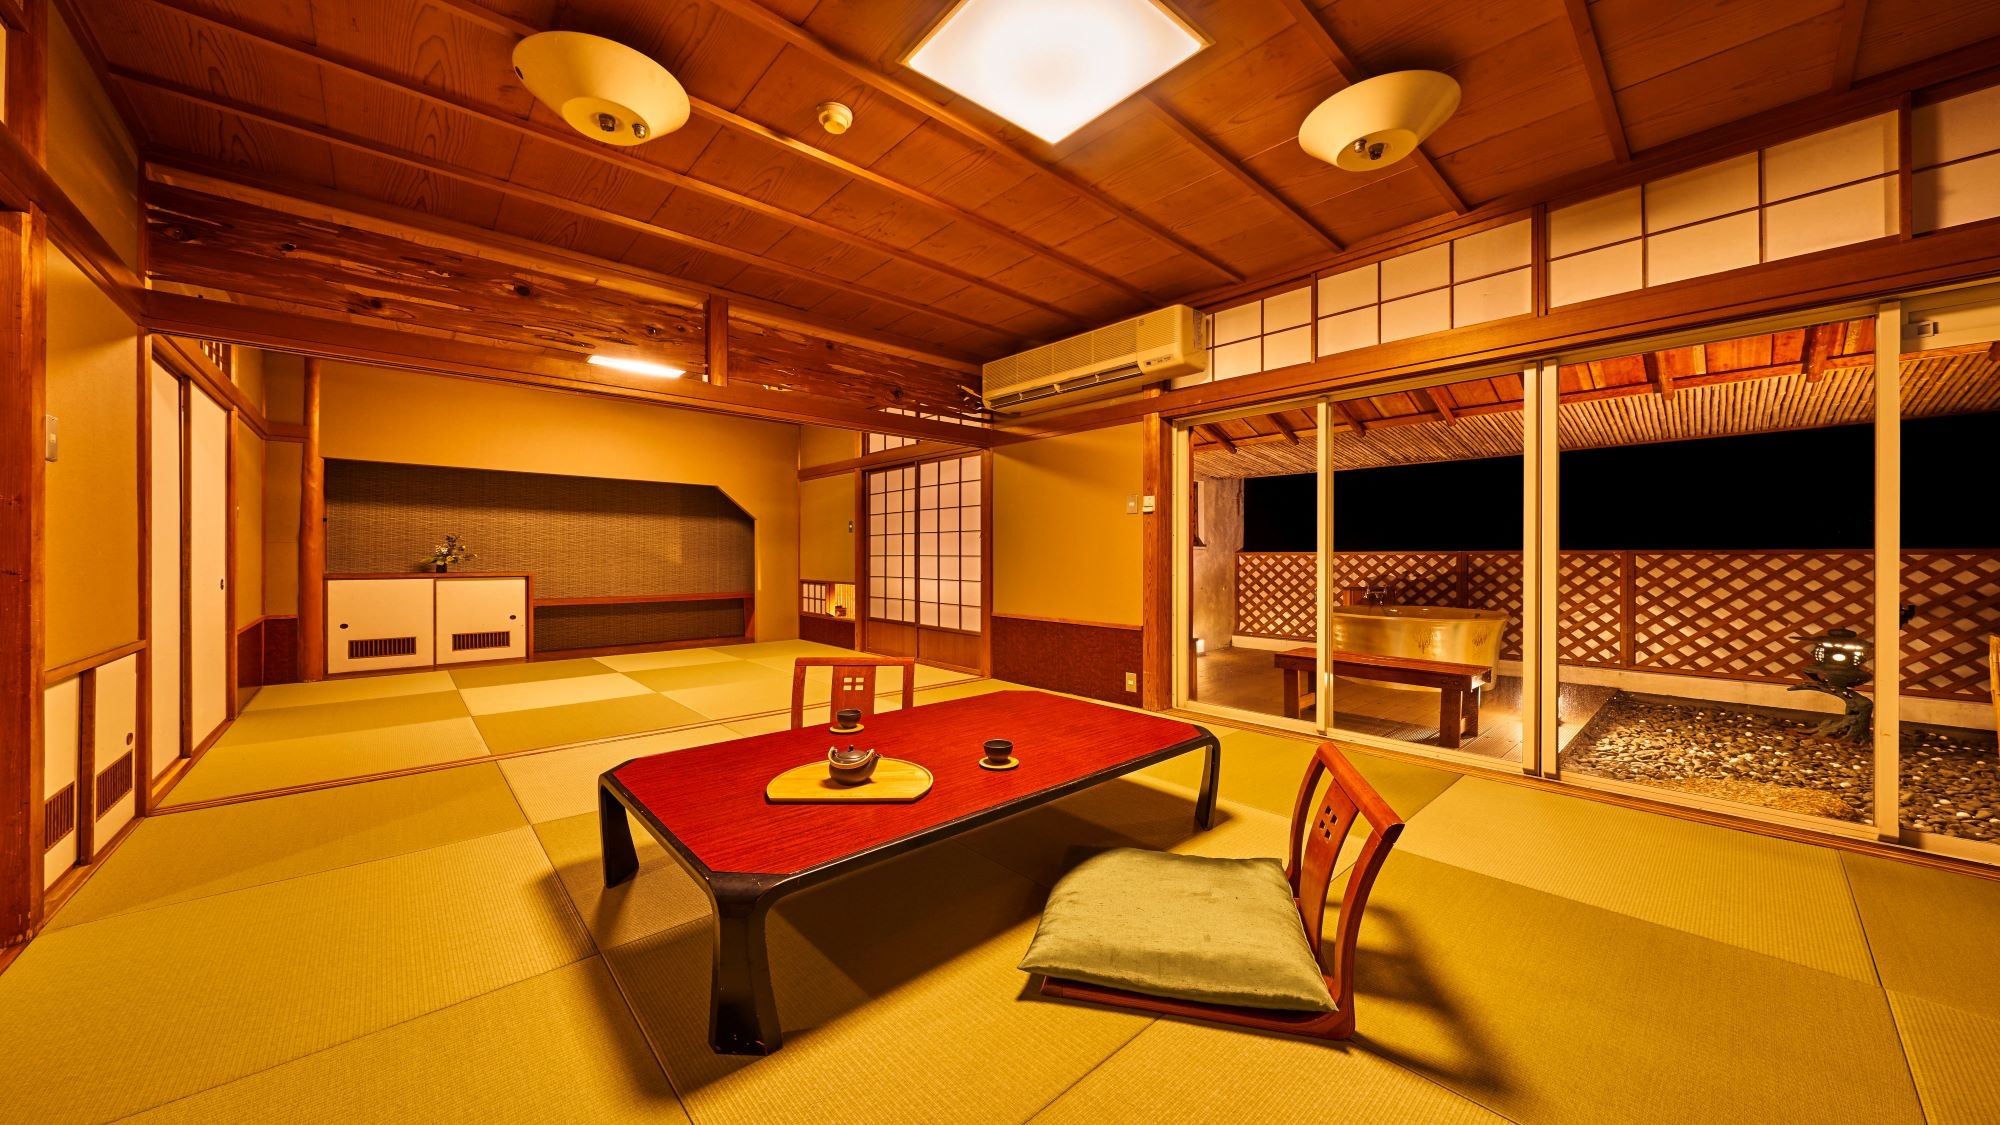 ห้องพักสไตล์ญี่ปุ่น 2 ห้องพร้อมอ่างอาบน้ำโอเพ่นแอร์ที่เหนือกว่า * ตัวอย่างห้องพัก